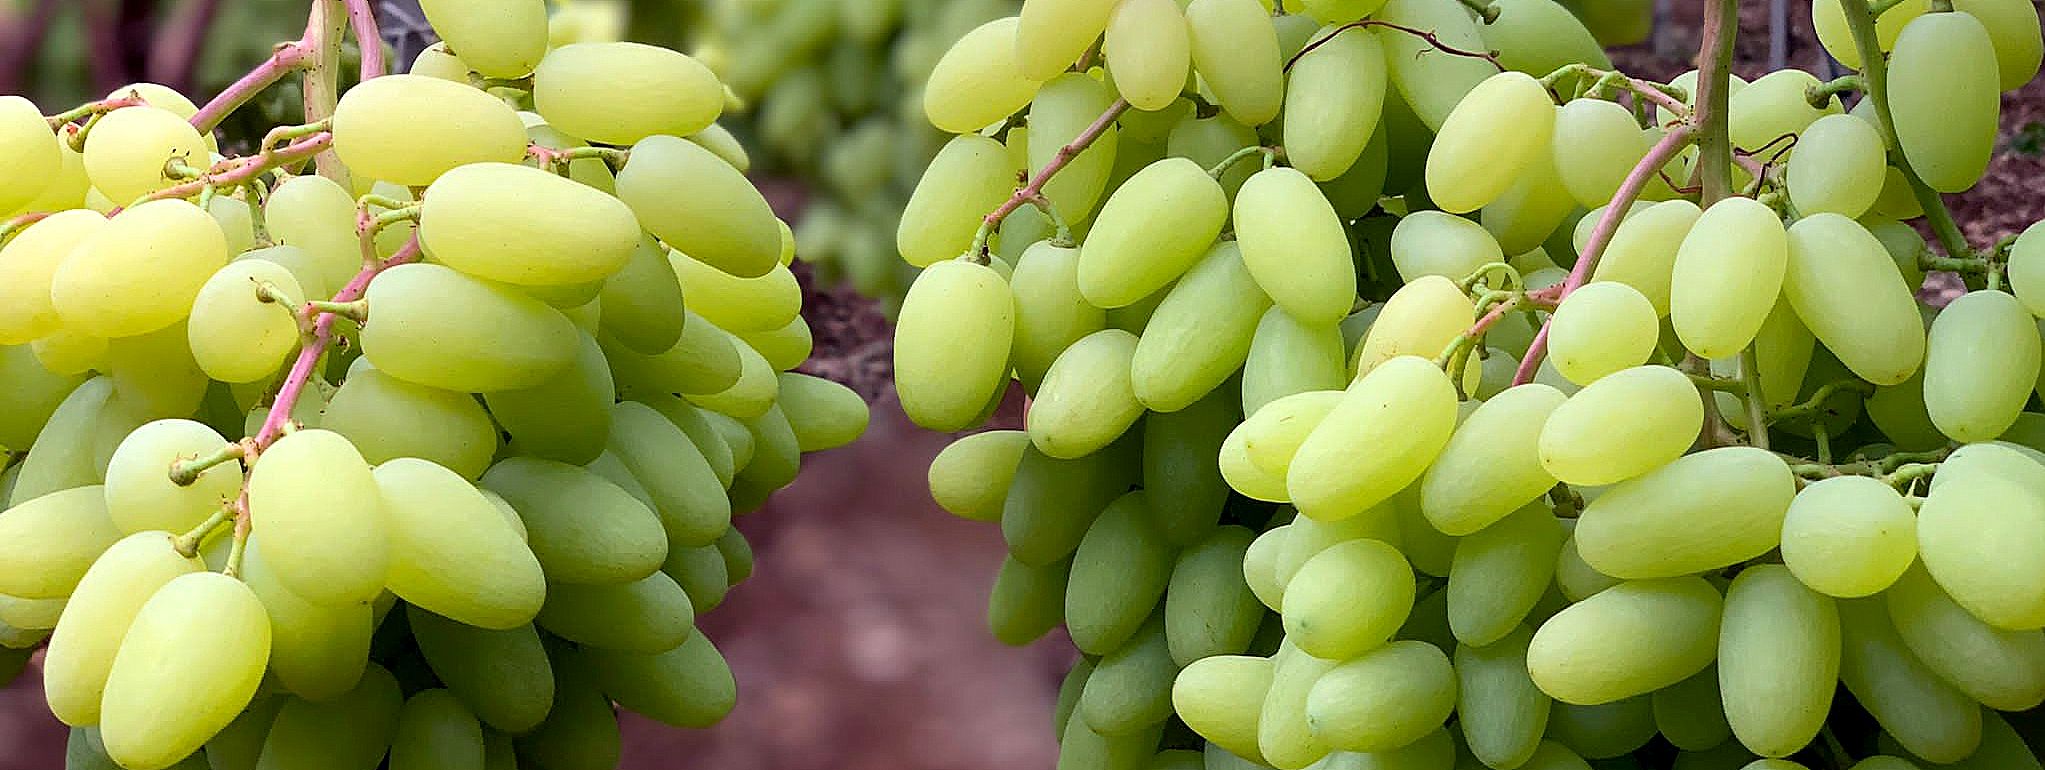 Il clima sta trasformando la geografia della frutta italiana: i kiwi “migrano” a sud, arrivano avocado e uva senza semi